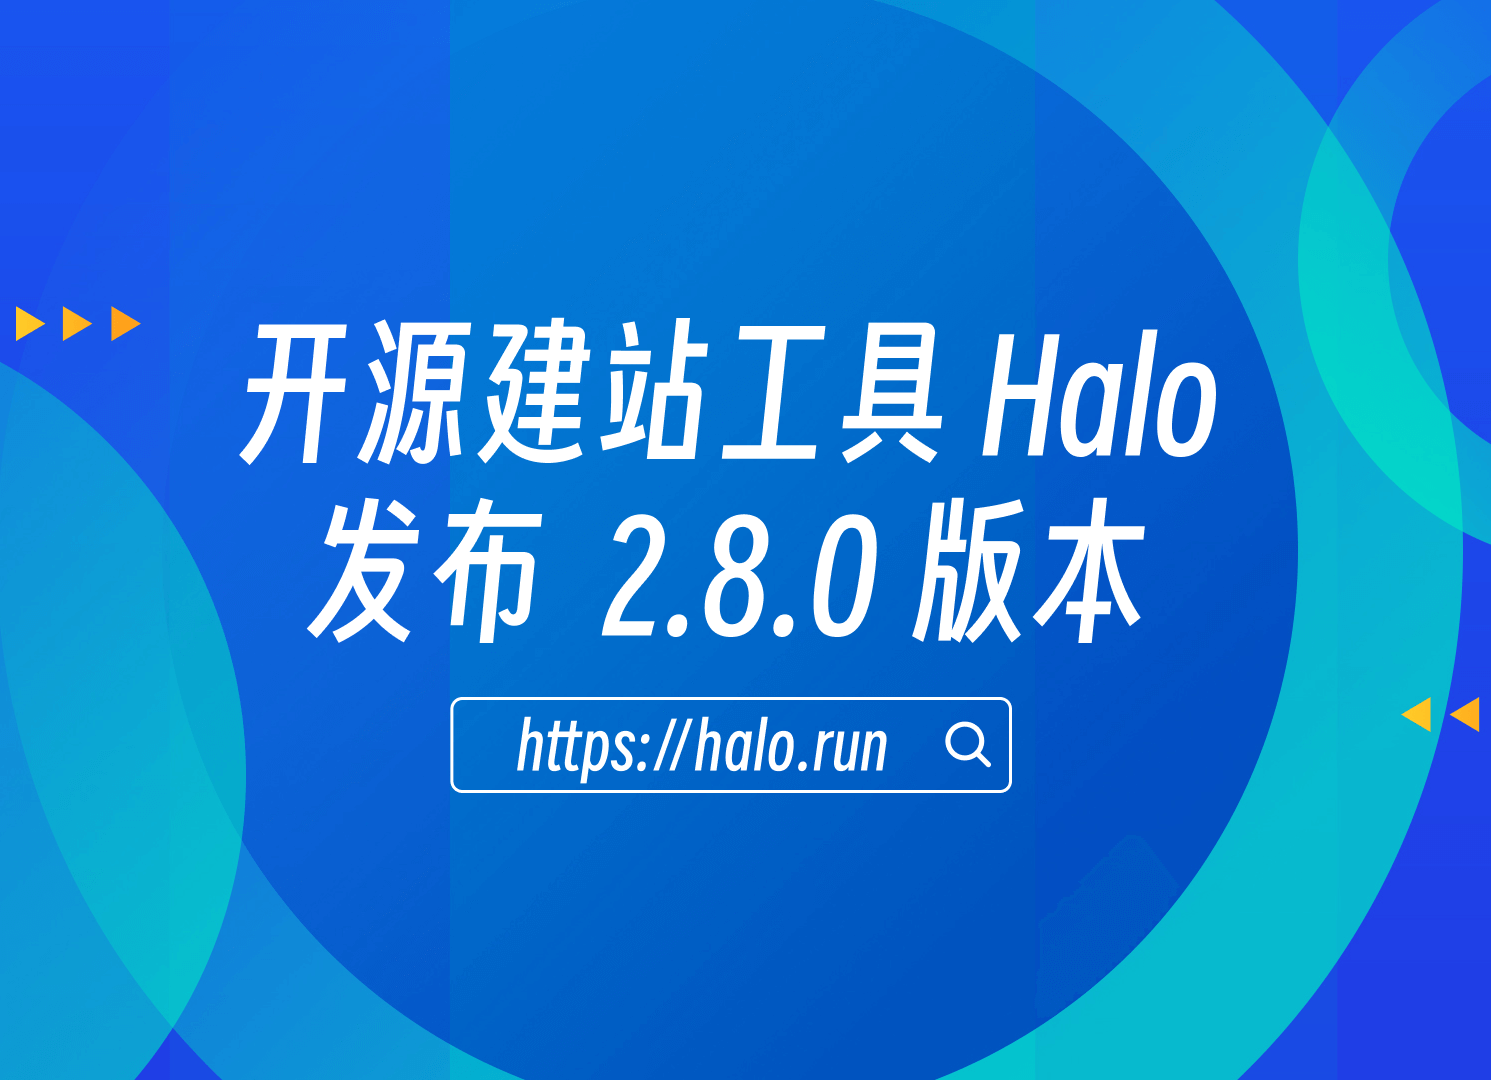 支持备份恢复，Halo 2.8.0 发布